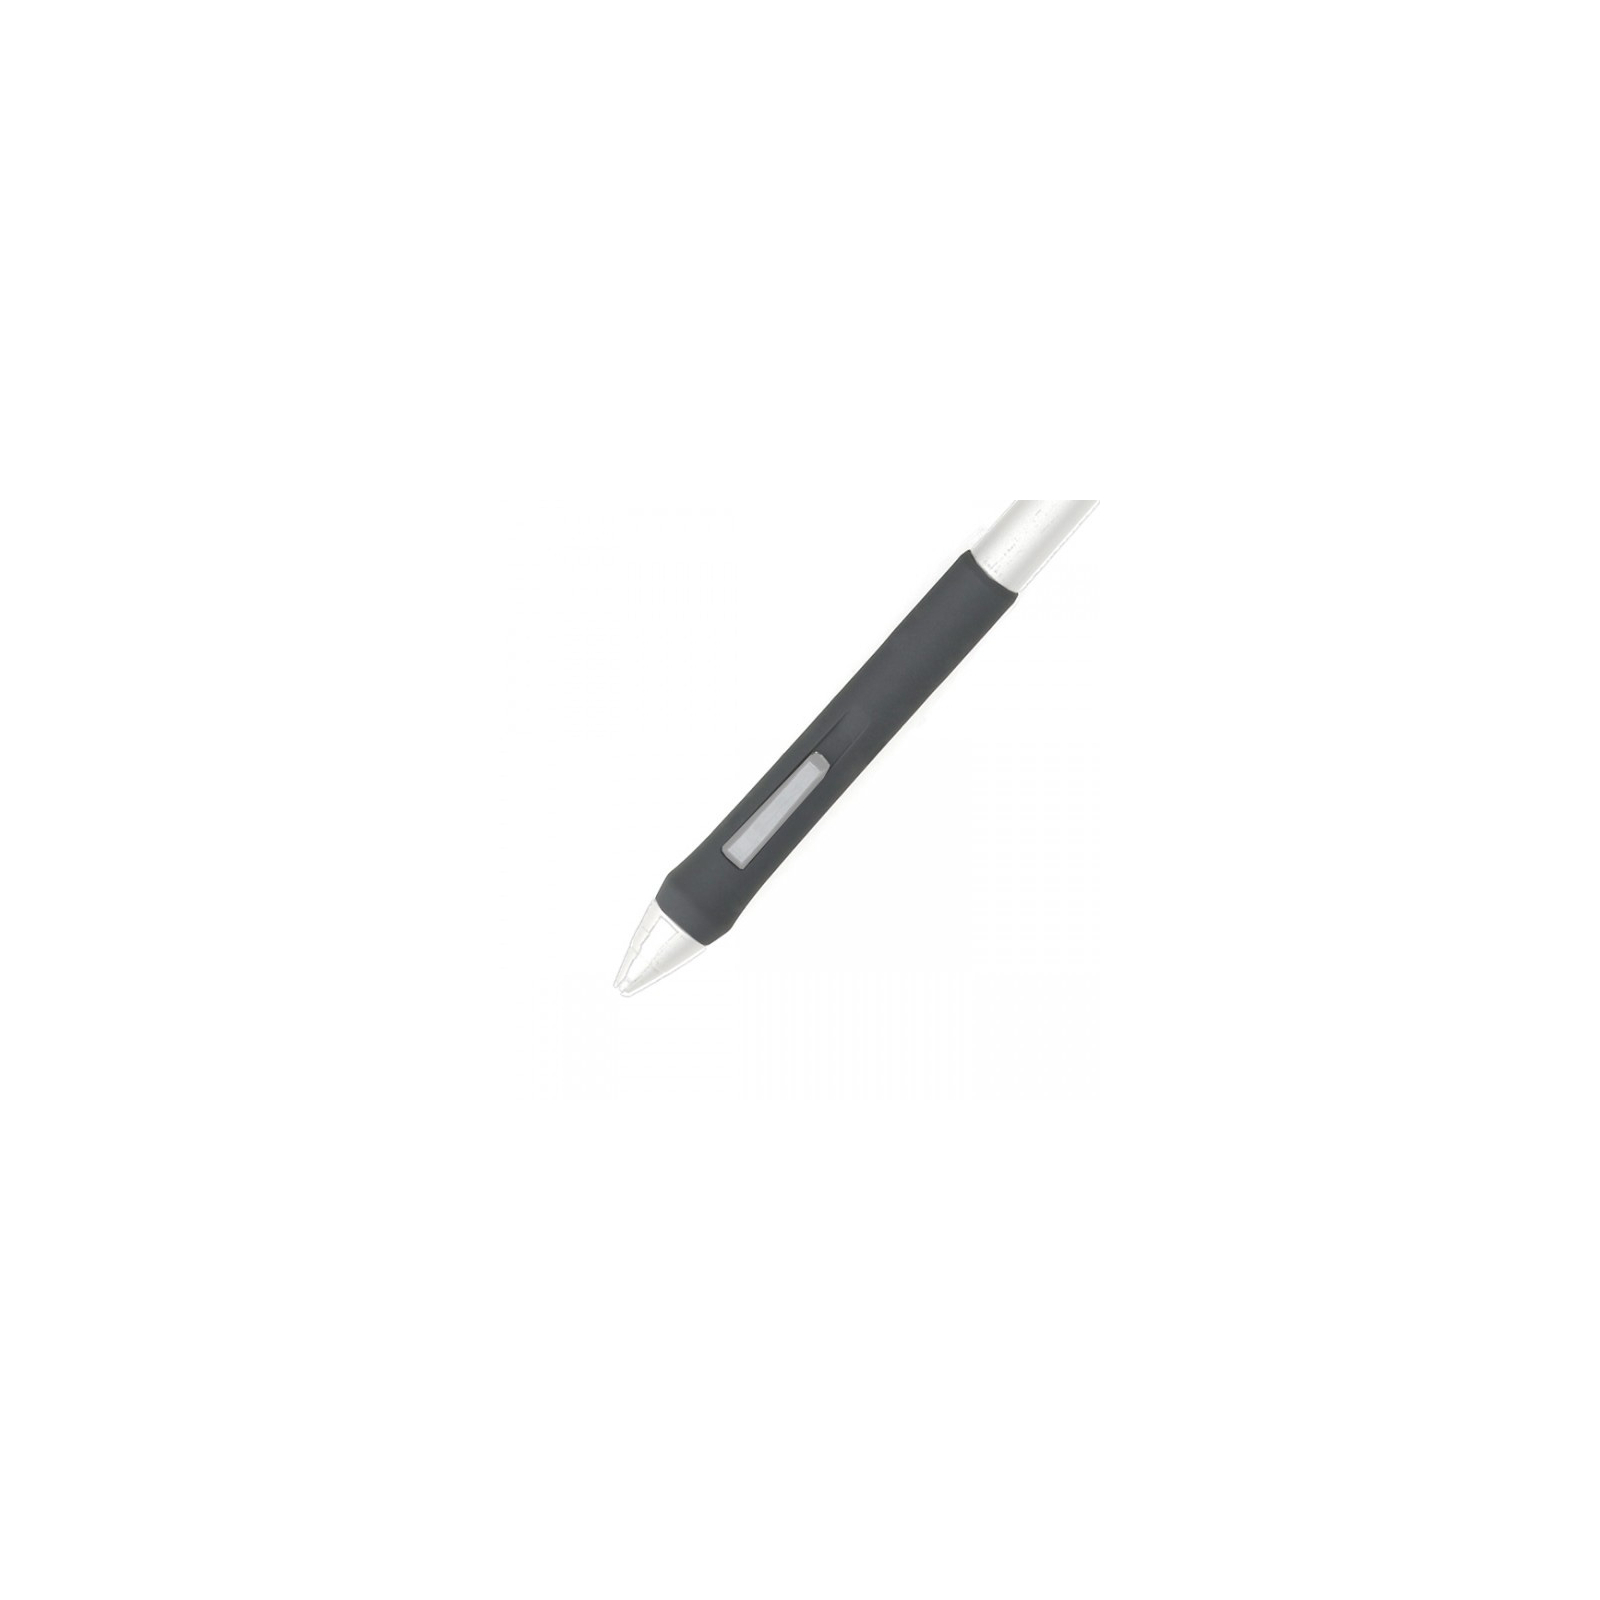 Перо Wacom Grip Pen для Intuos3 и Cintiq 21UX (ZP-501E)